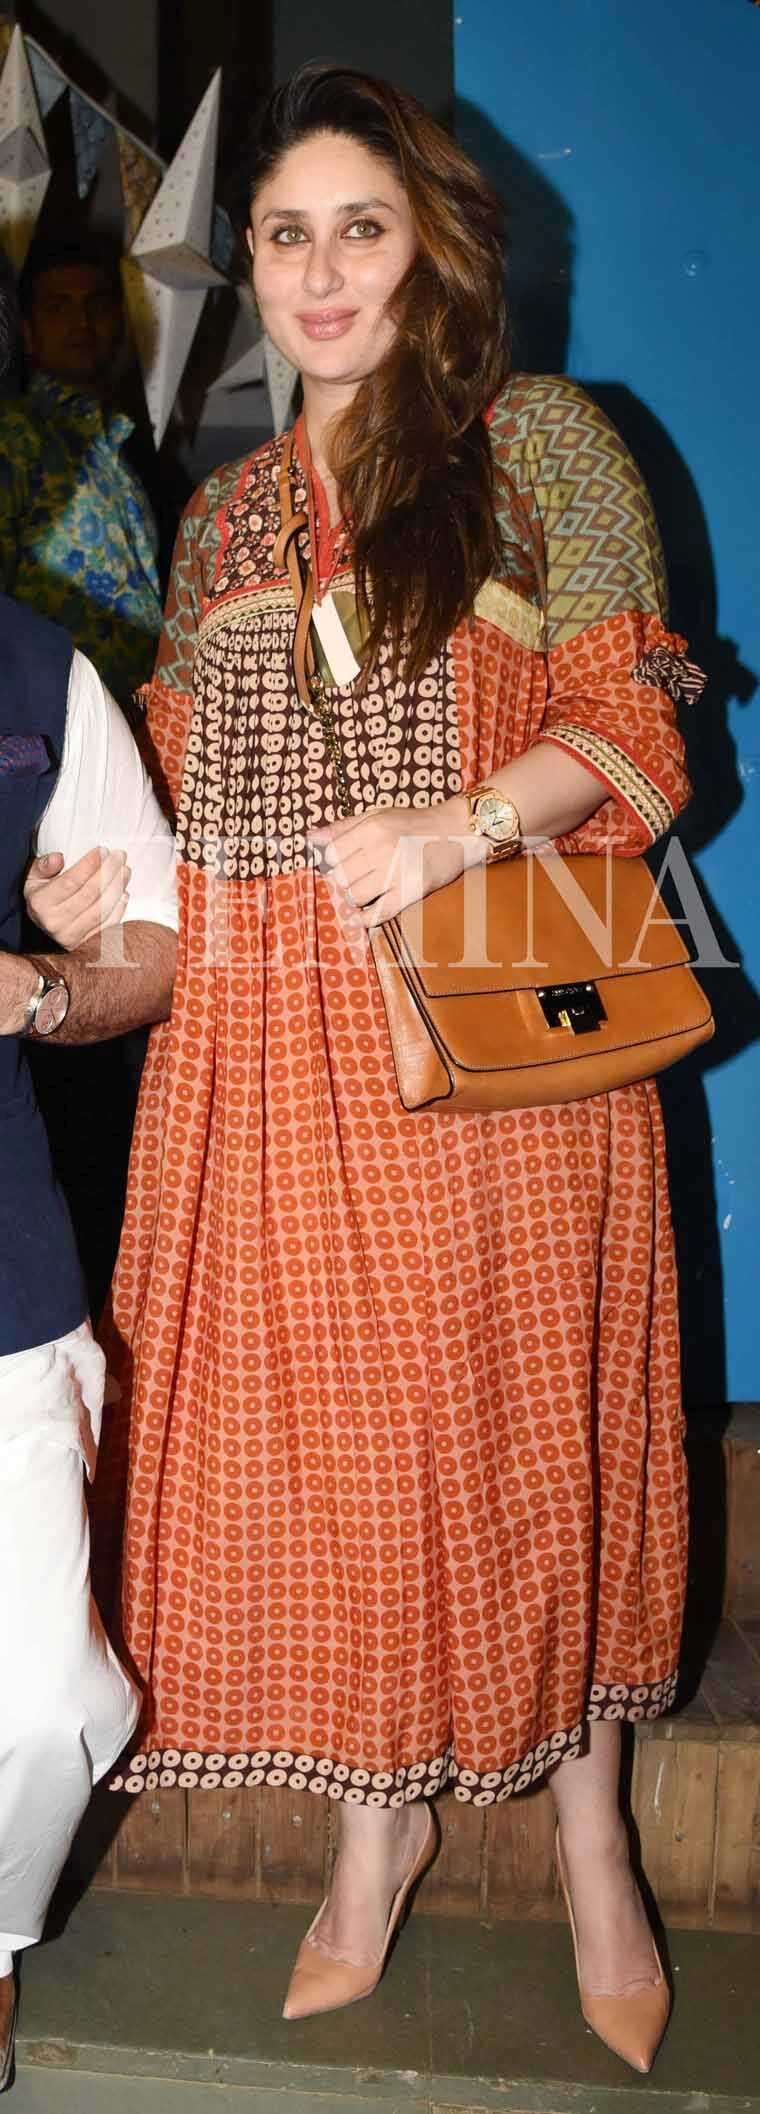 Copy Kareena Kapoor, Dia Mirza’s style | Femina.in